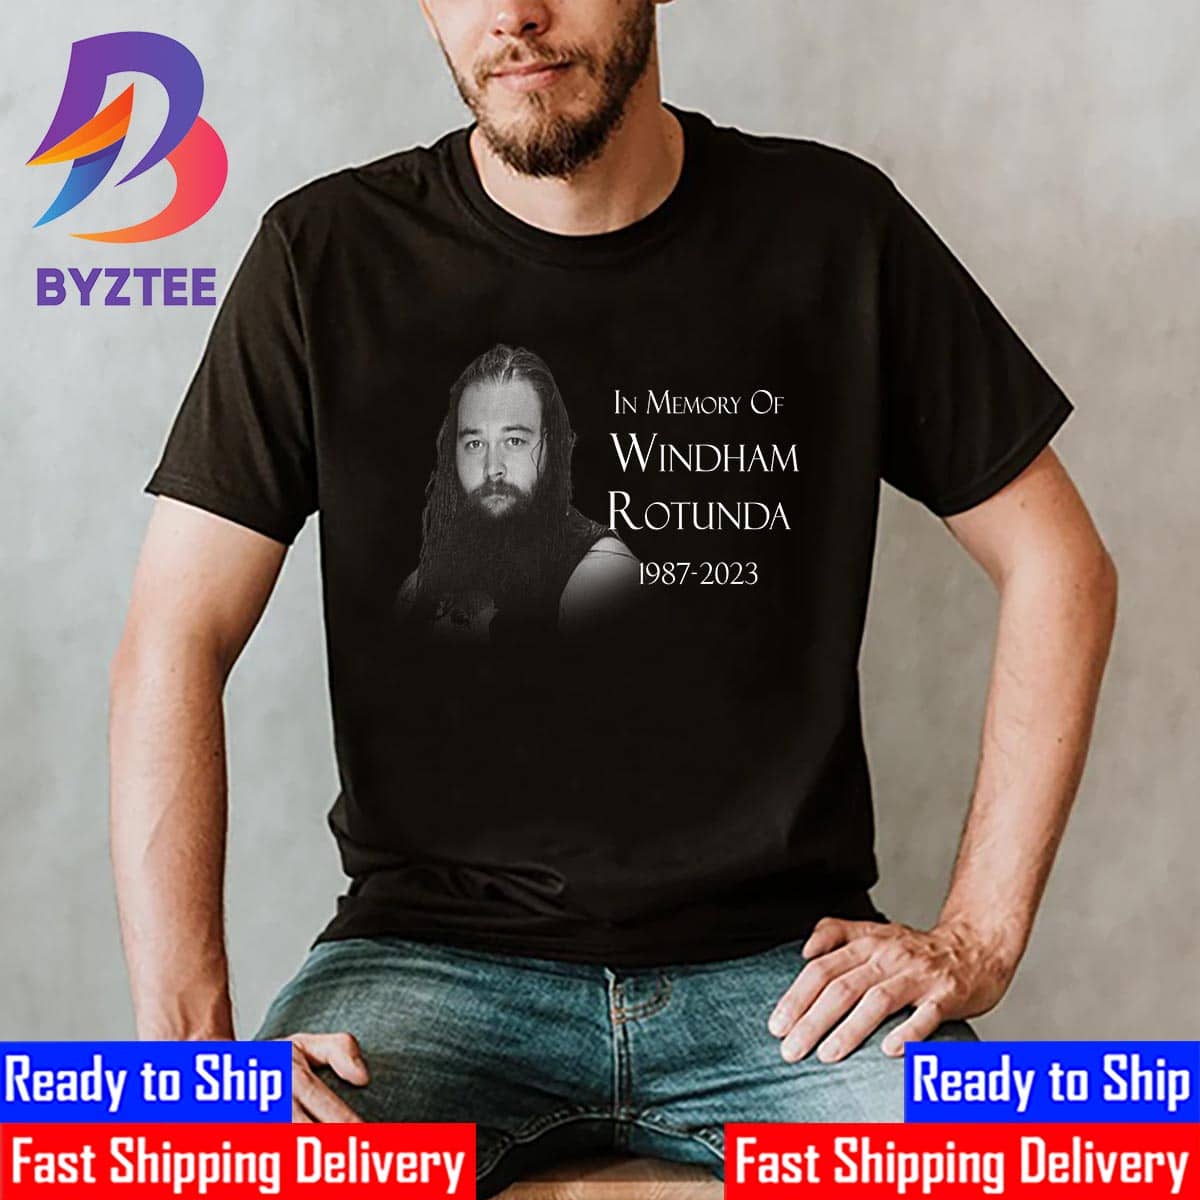 Windham Rotunda Bray Wyatt Memorial T-Shirt